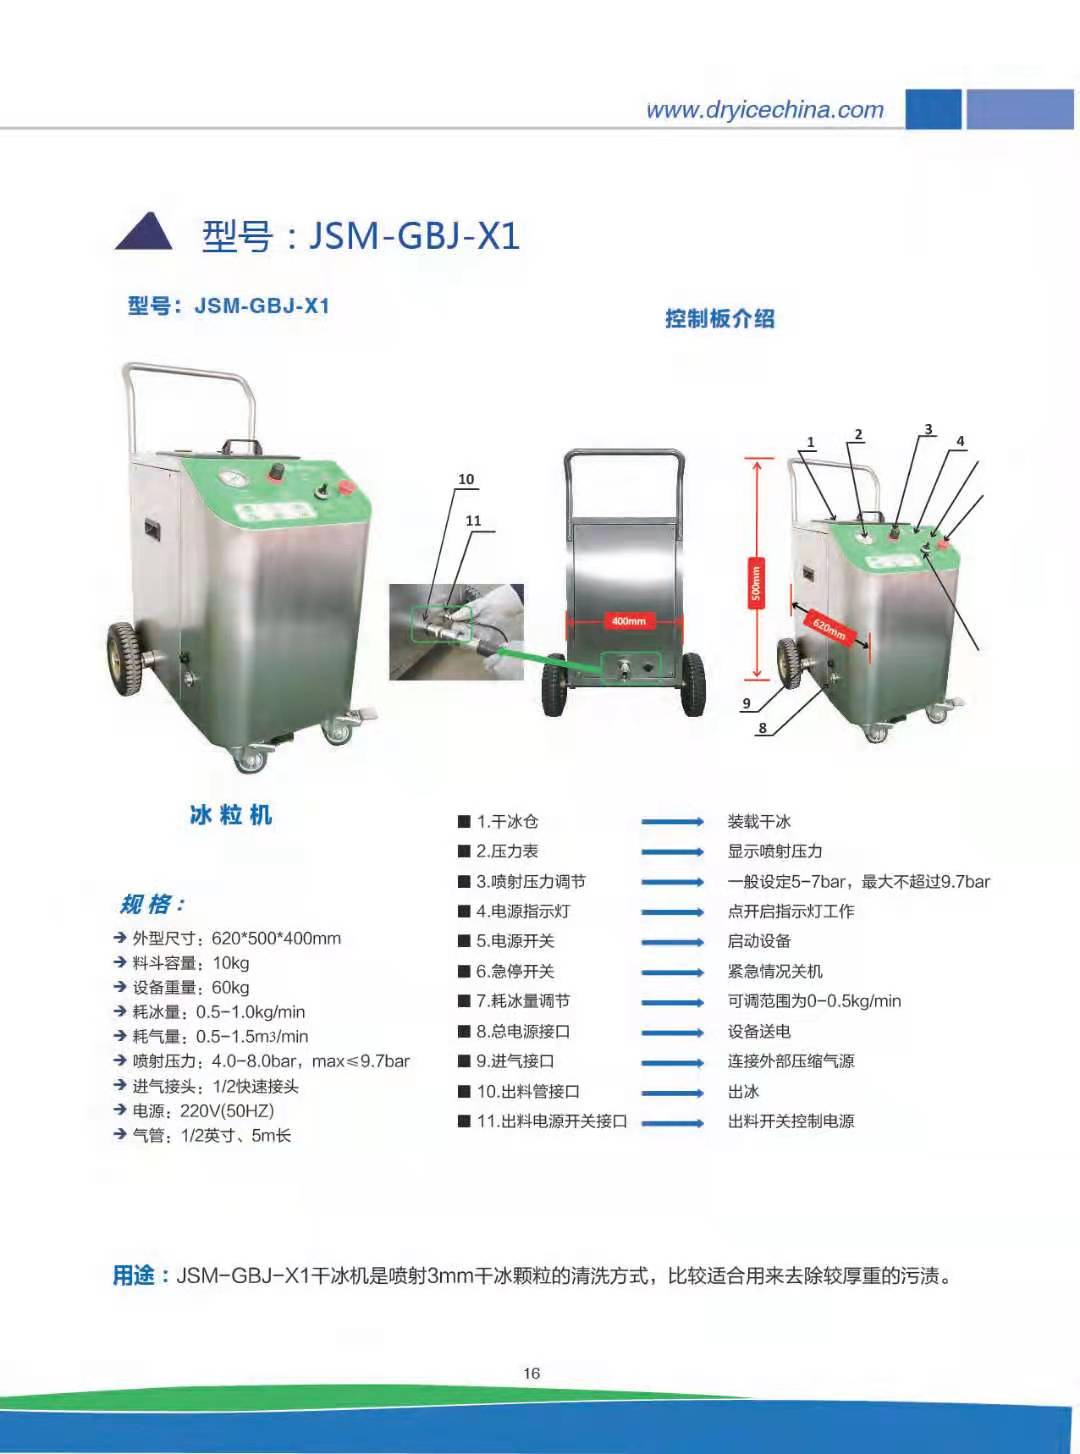 育航干冰清洗机JSM-GBJ-X1/干冰清洗机厂家/干冰清洗服务/干冰清洗机租赁